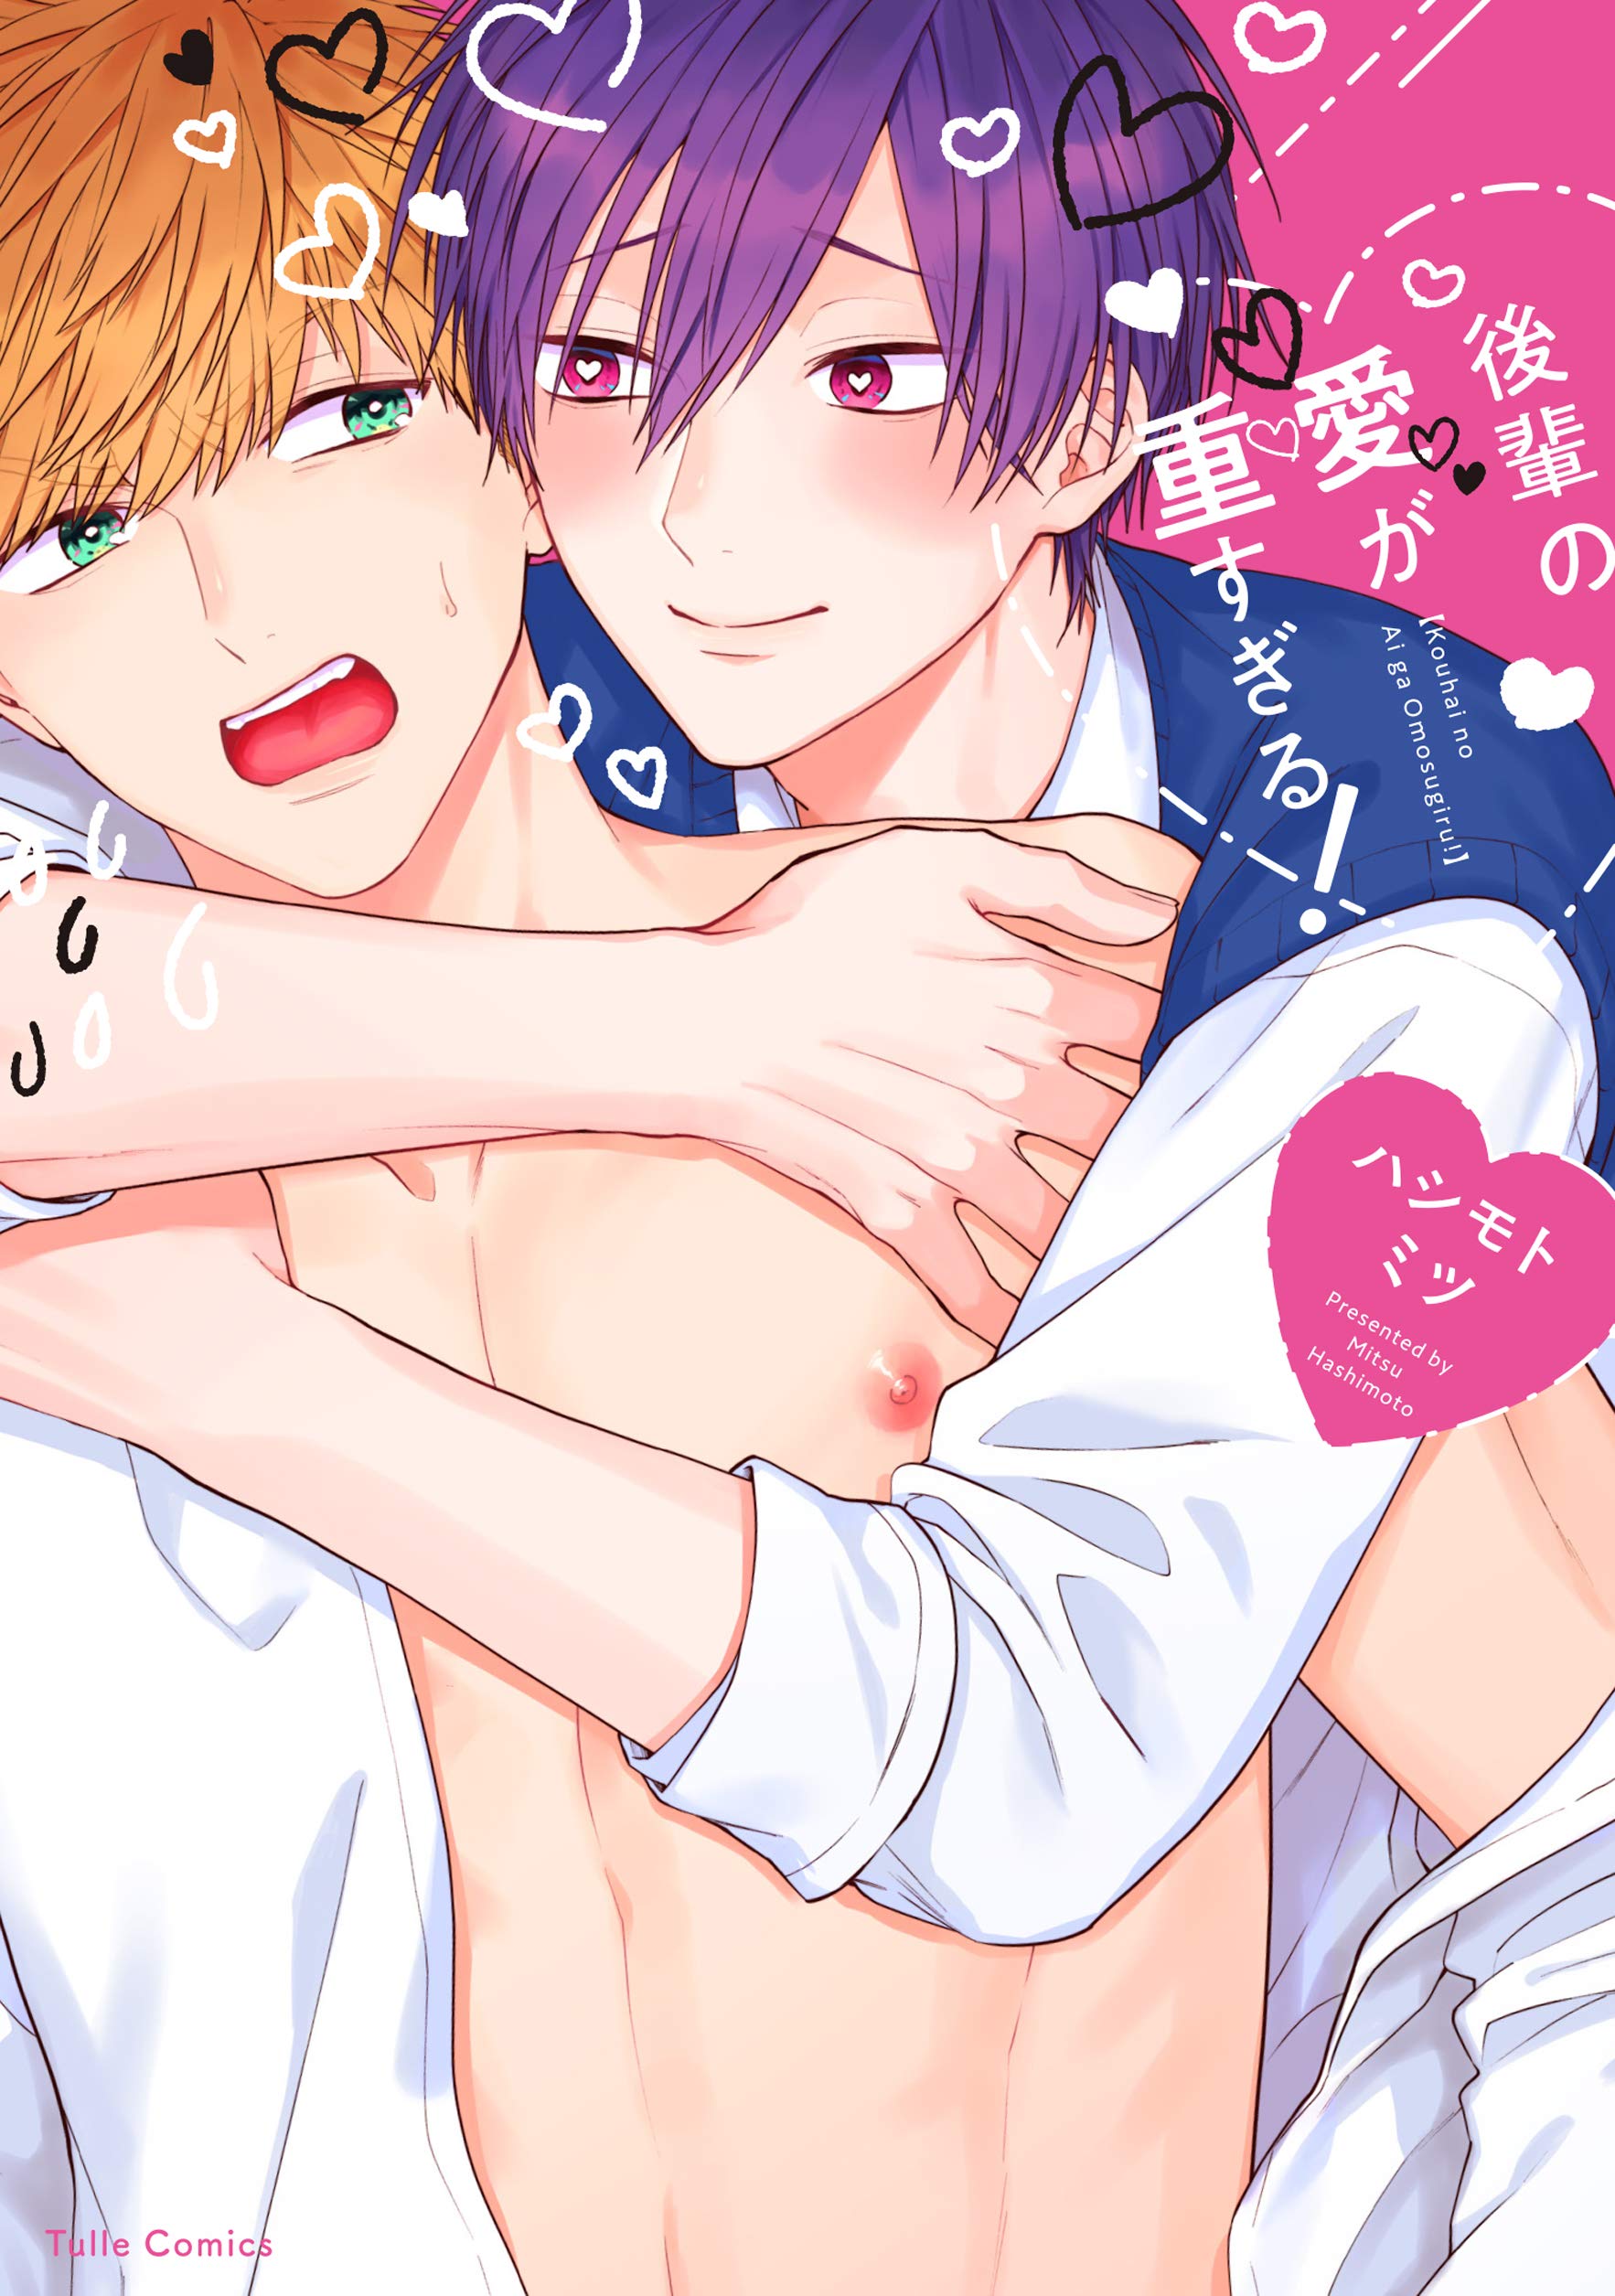 Boys Love (Yaoi) Comics - Kouhai no Ai ga Omosugiru! (後輩の愛が重すぎる!【限定ペーパー付】 (Tulle Comics)) / Hashimoto Mitsu